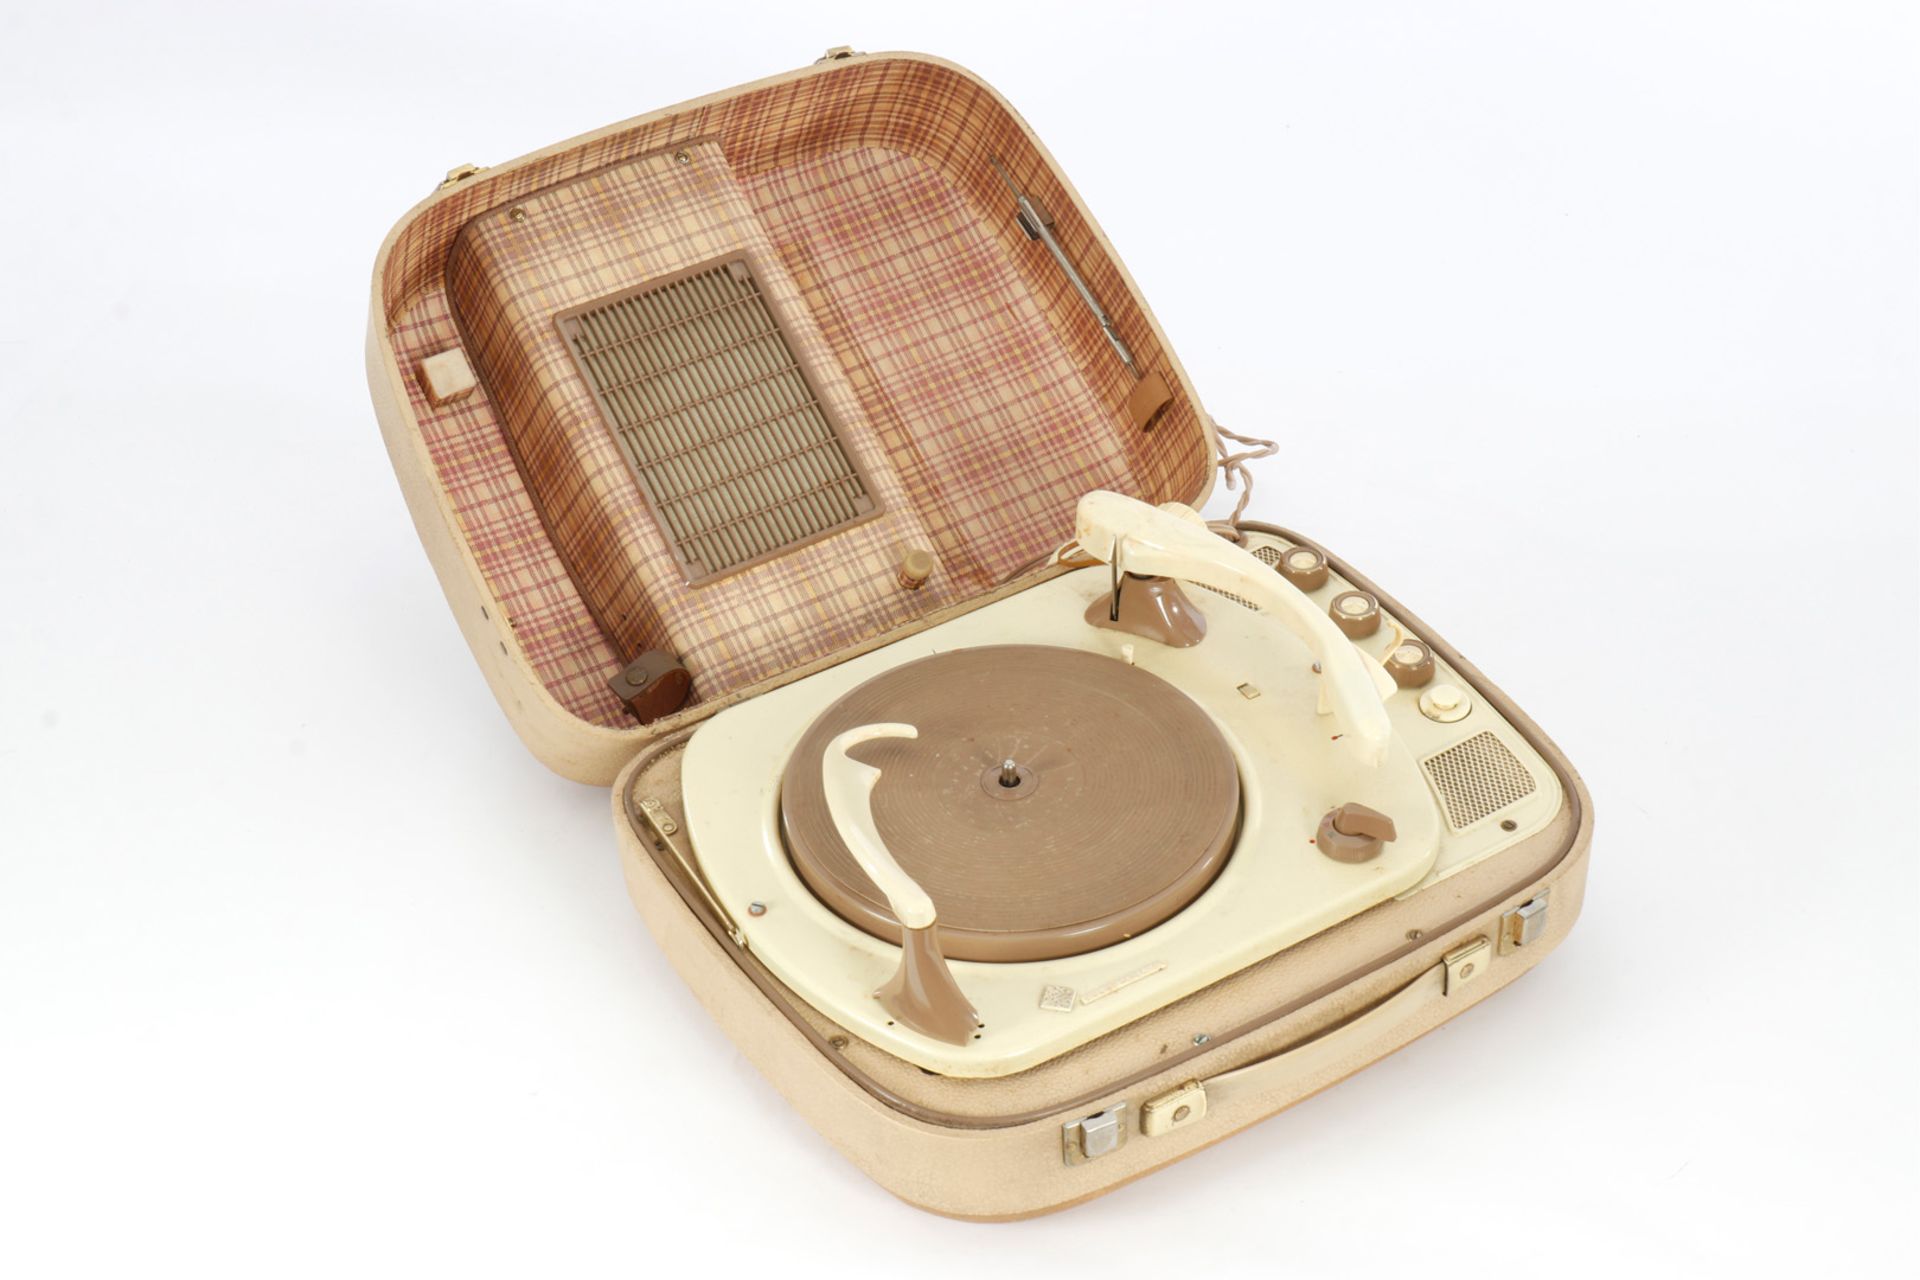 Telefunken Plattenspieler mit Plattenwechsler, im Koffer, 60er Jahre, Lautsprecherabdeckung